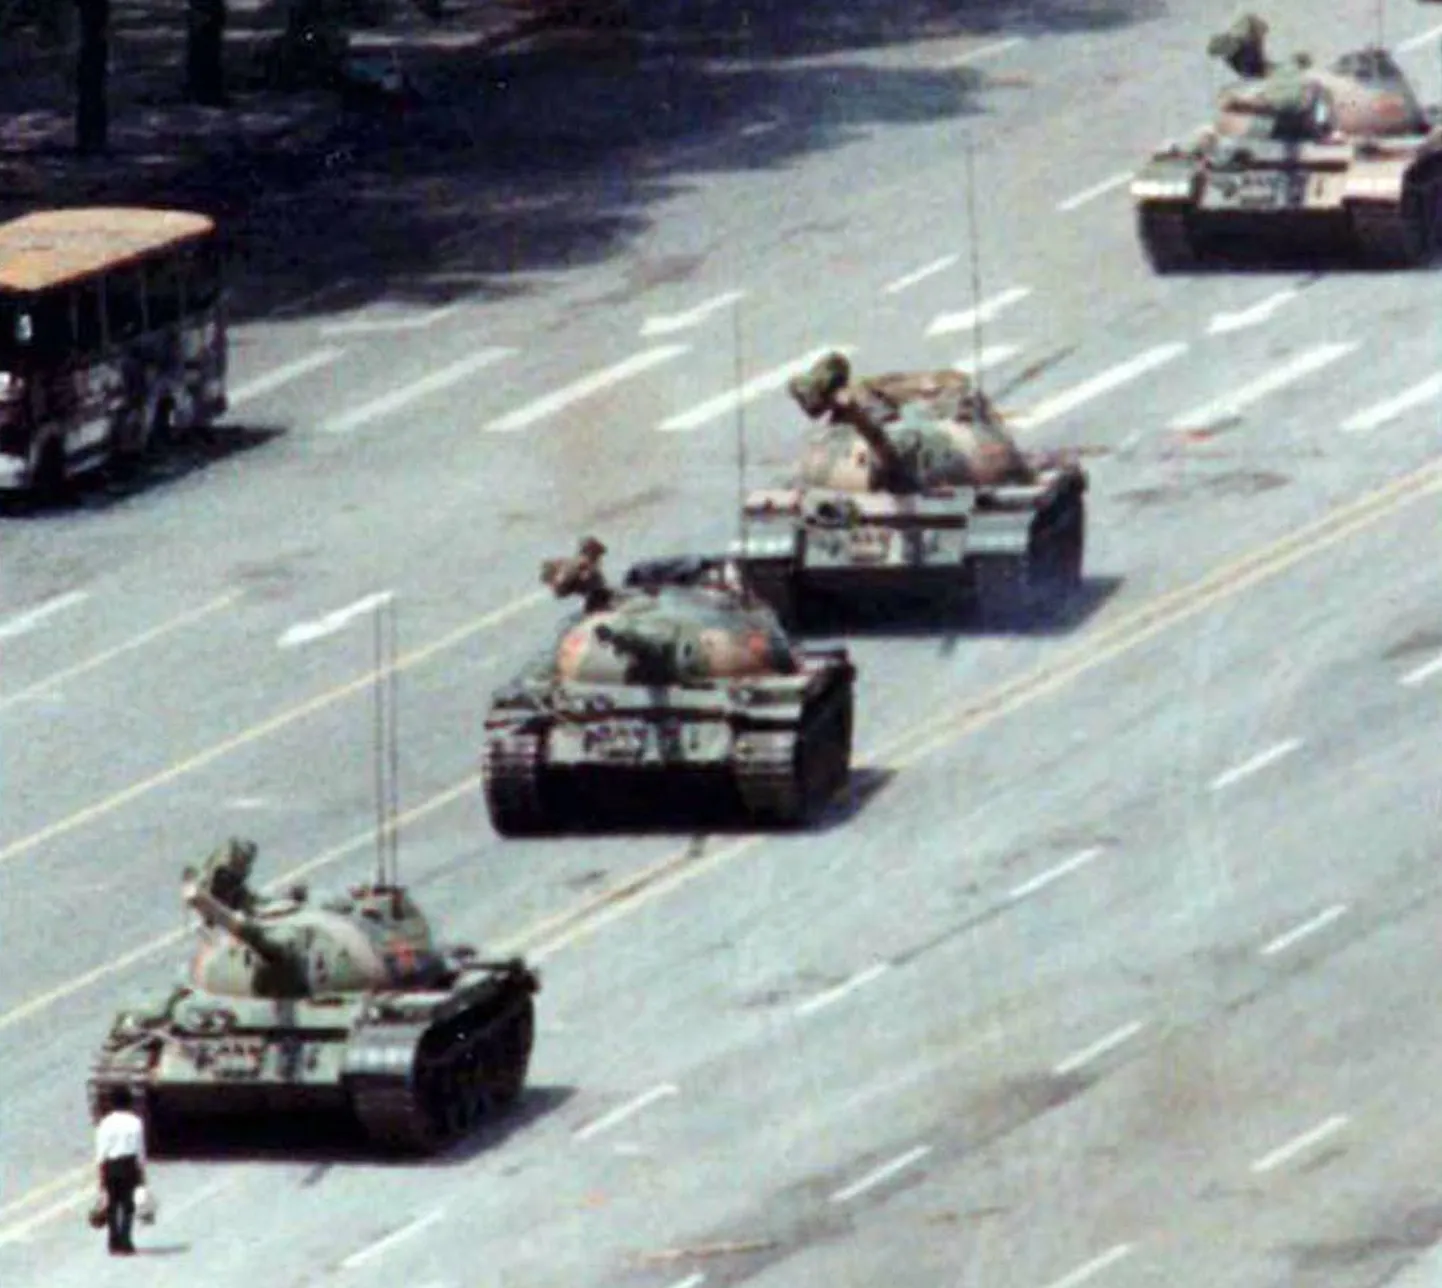 Tiananmeni meeleavalduste kuulsaimal, 5. juunil 1989 tehtud fotol on tundmatu valges särgis mees astunud vastu tankikolonnile. Kolonn peatus ja sõjaväelased viisid mehe minema. Foto on Hiinas endiselt keelatud ning mehe saatus siiani ebaselge. Mõned väidavad, et ta hukati, teised, et ta pages Taiwani.